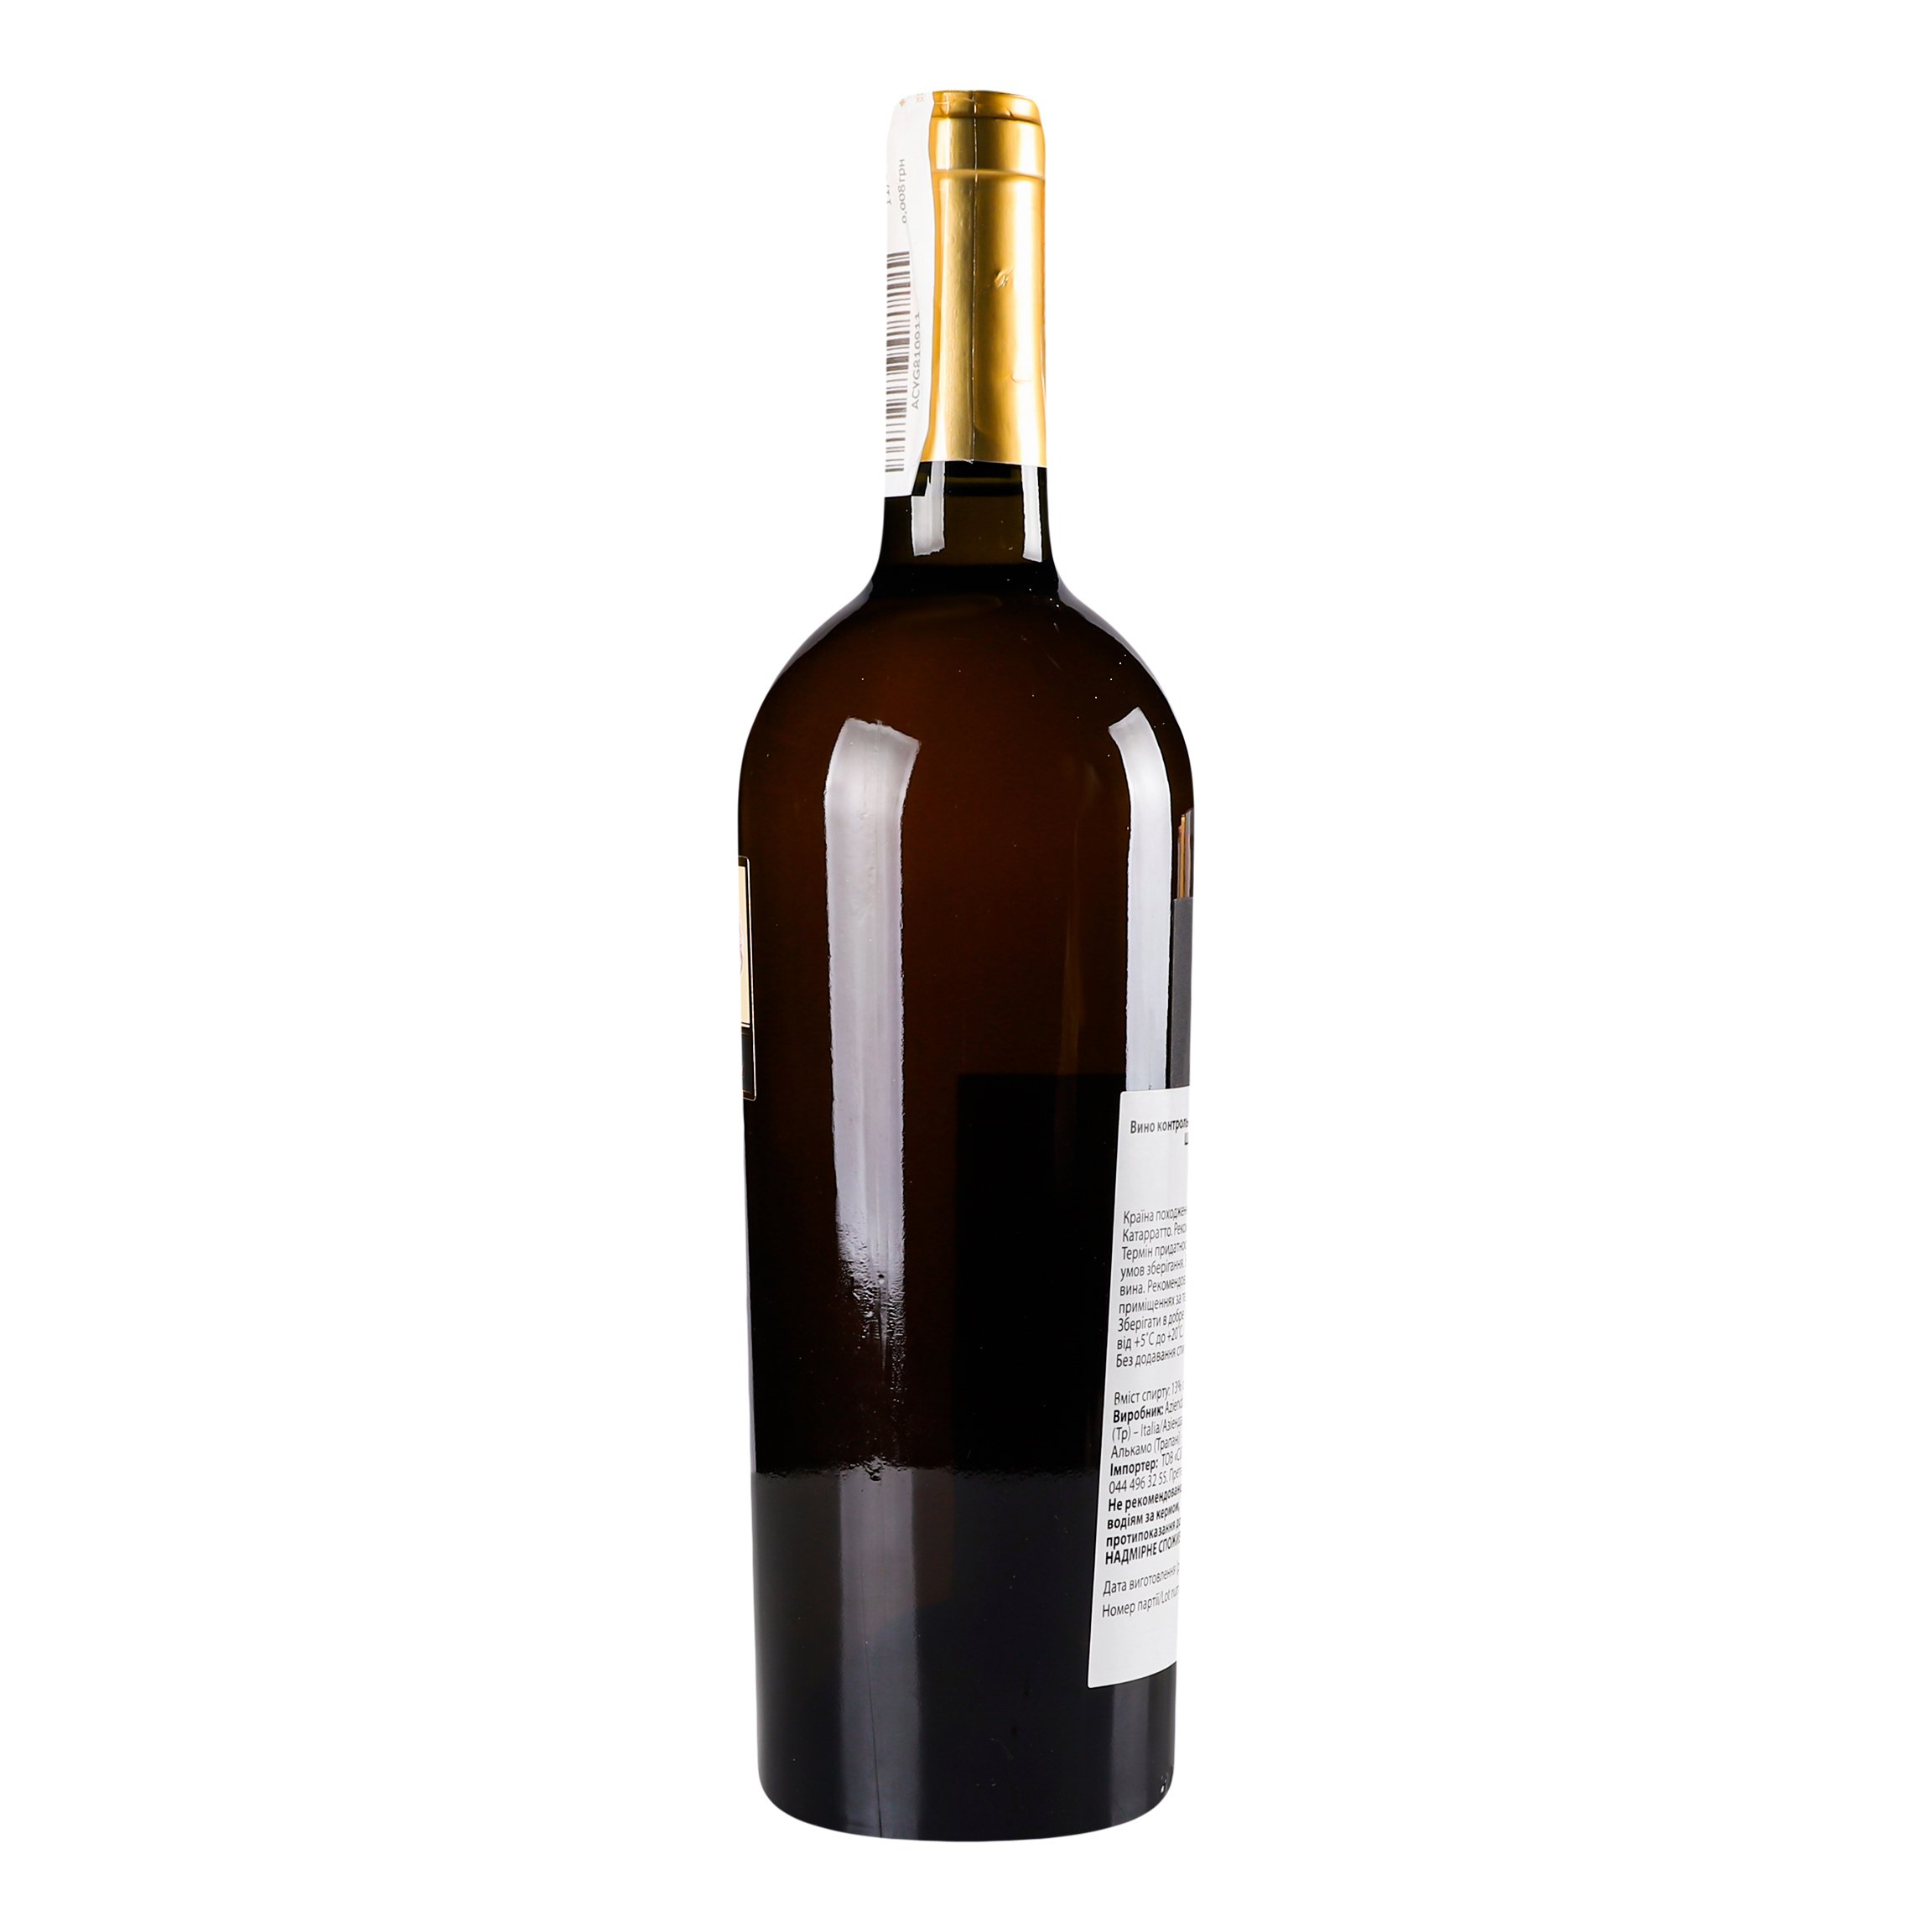 Вино Aldo Viola Shiva bianco 2017 IGT, 13%, 0,75 л (890043) - фото 2